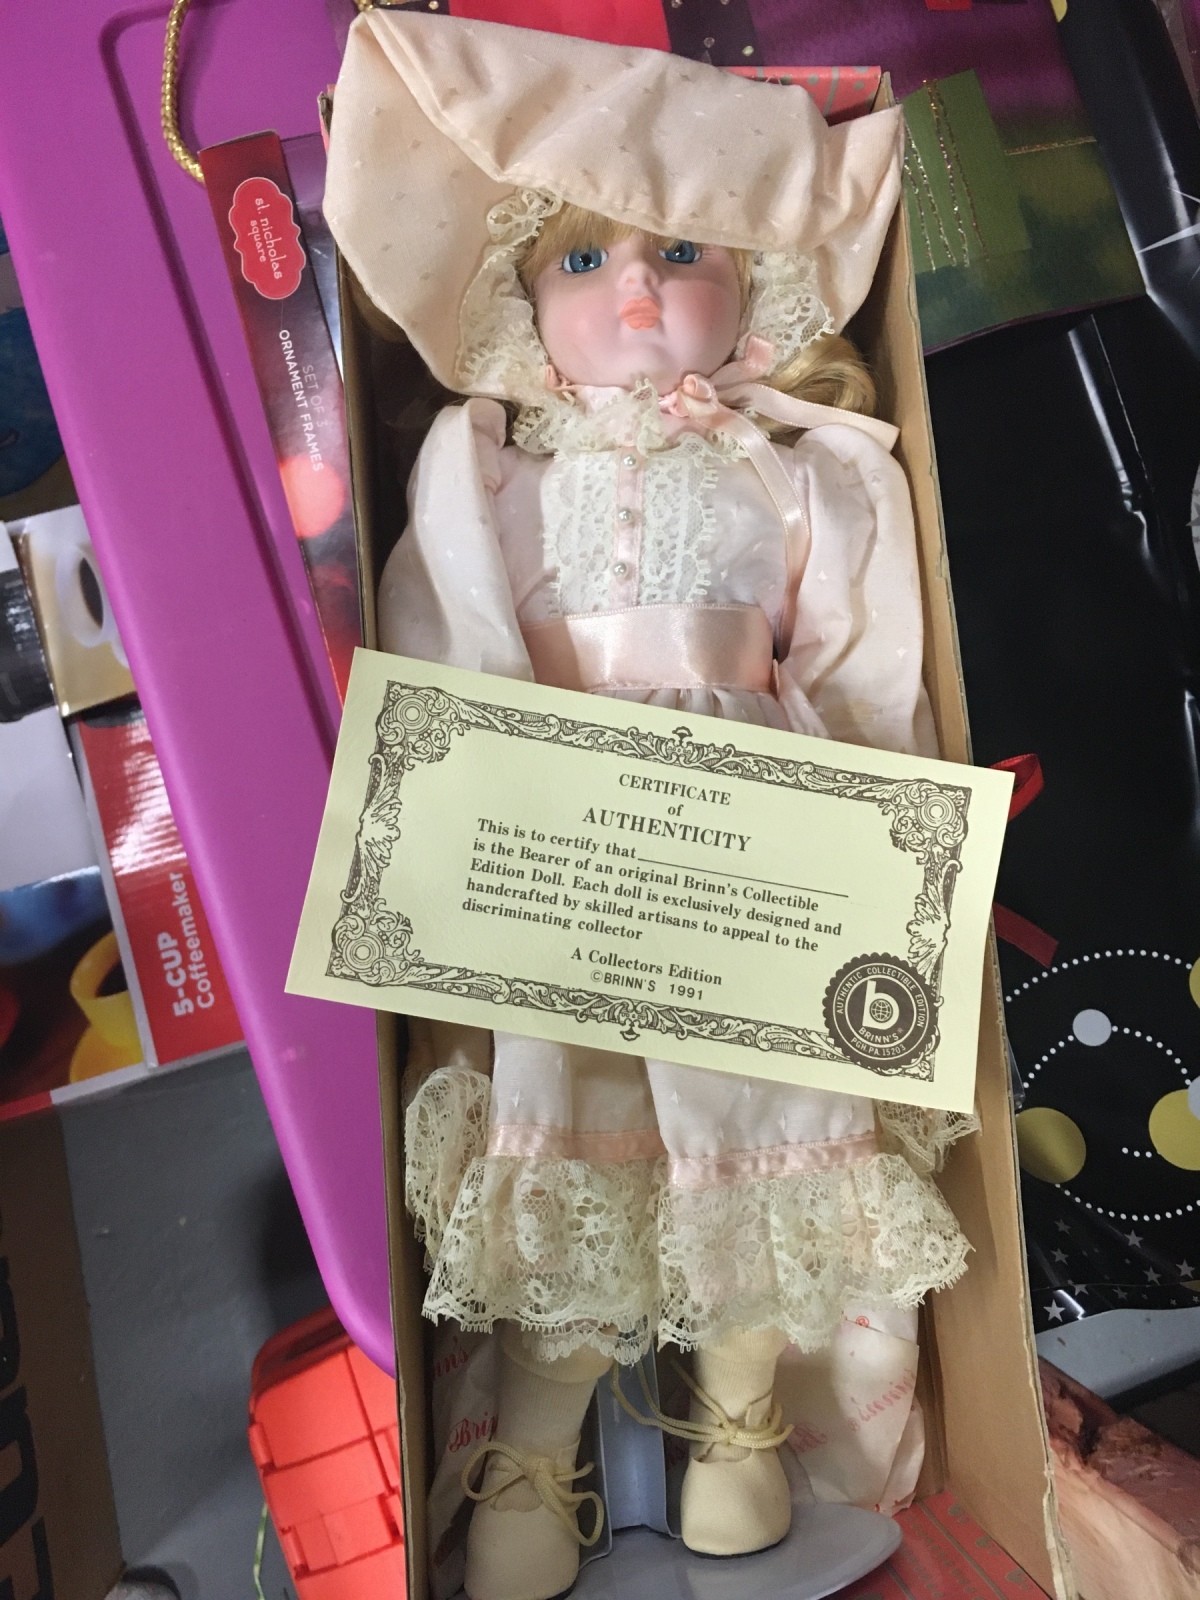 brinn's limited edition dolls